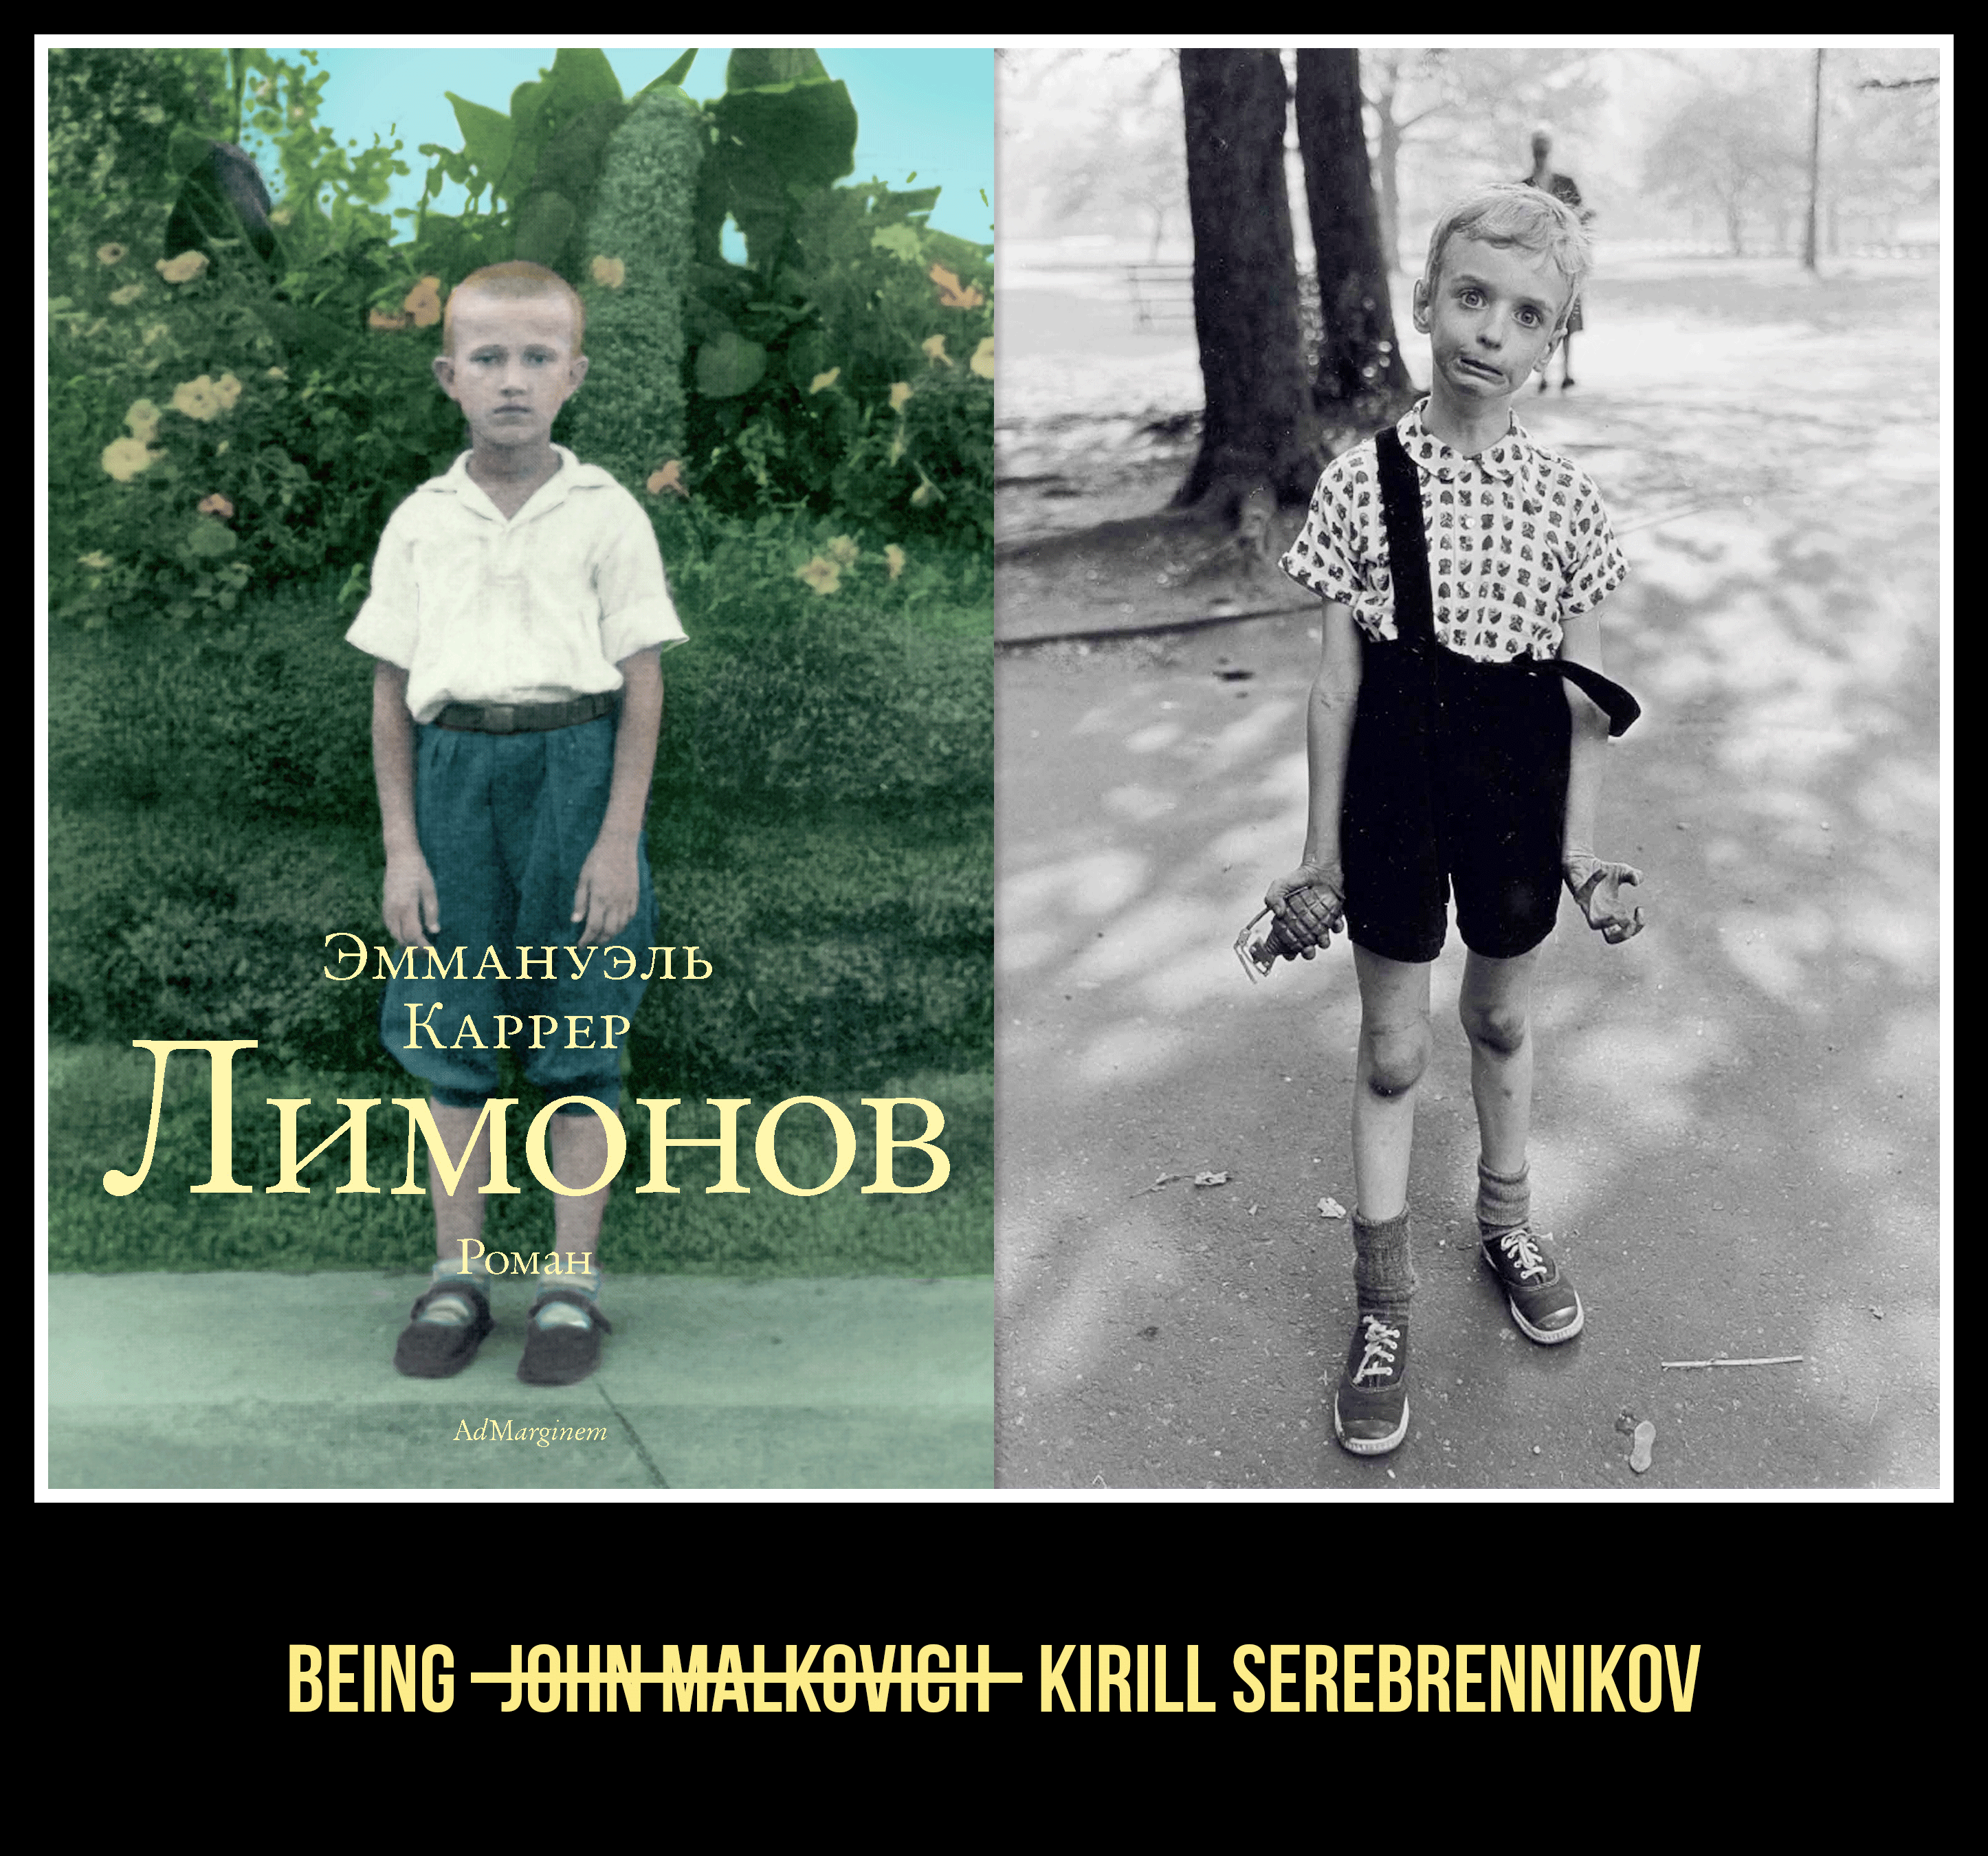 Being Kirill Serebrennikov